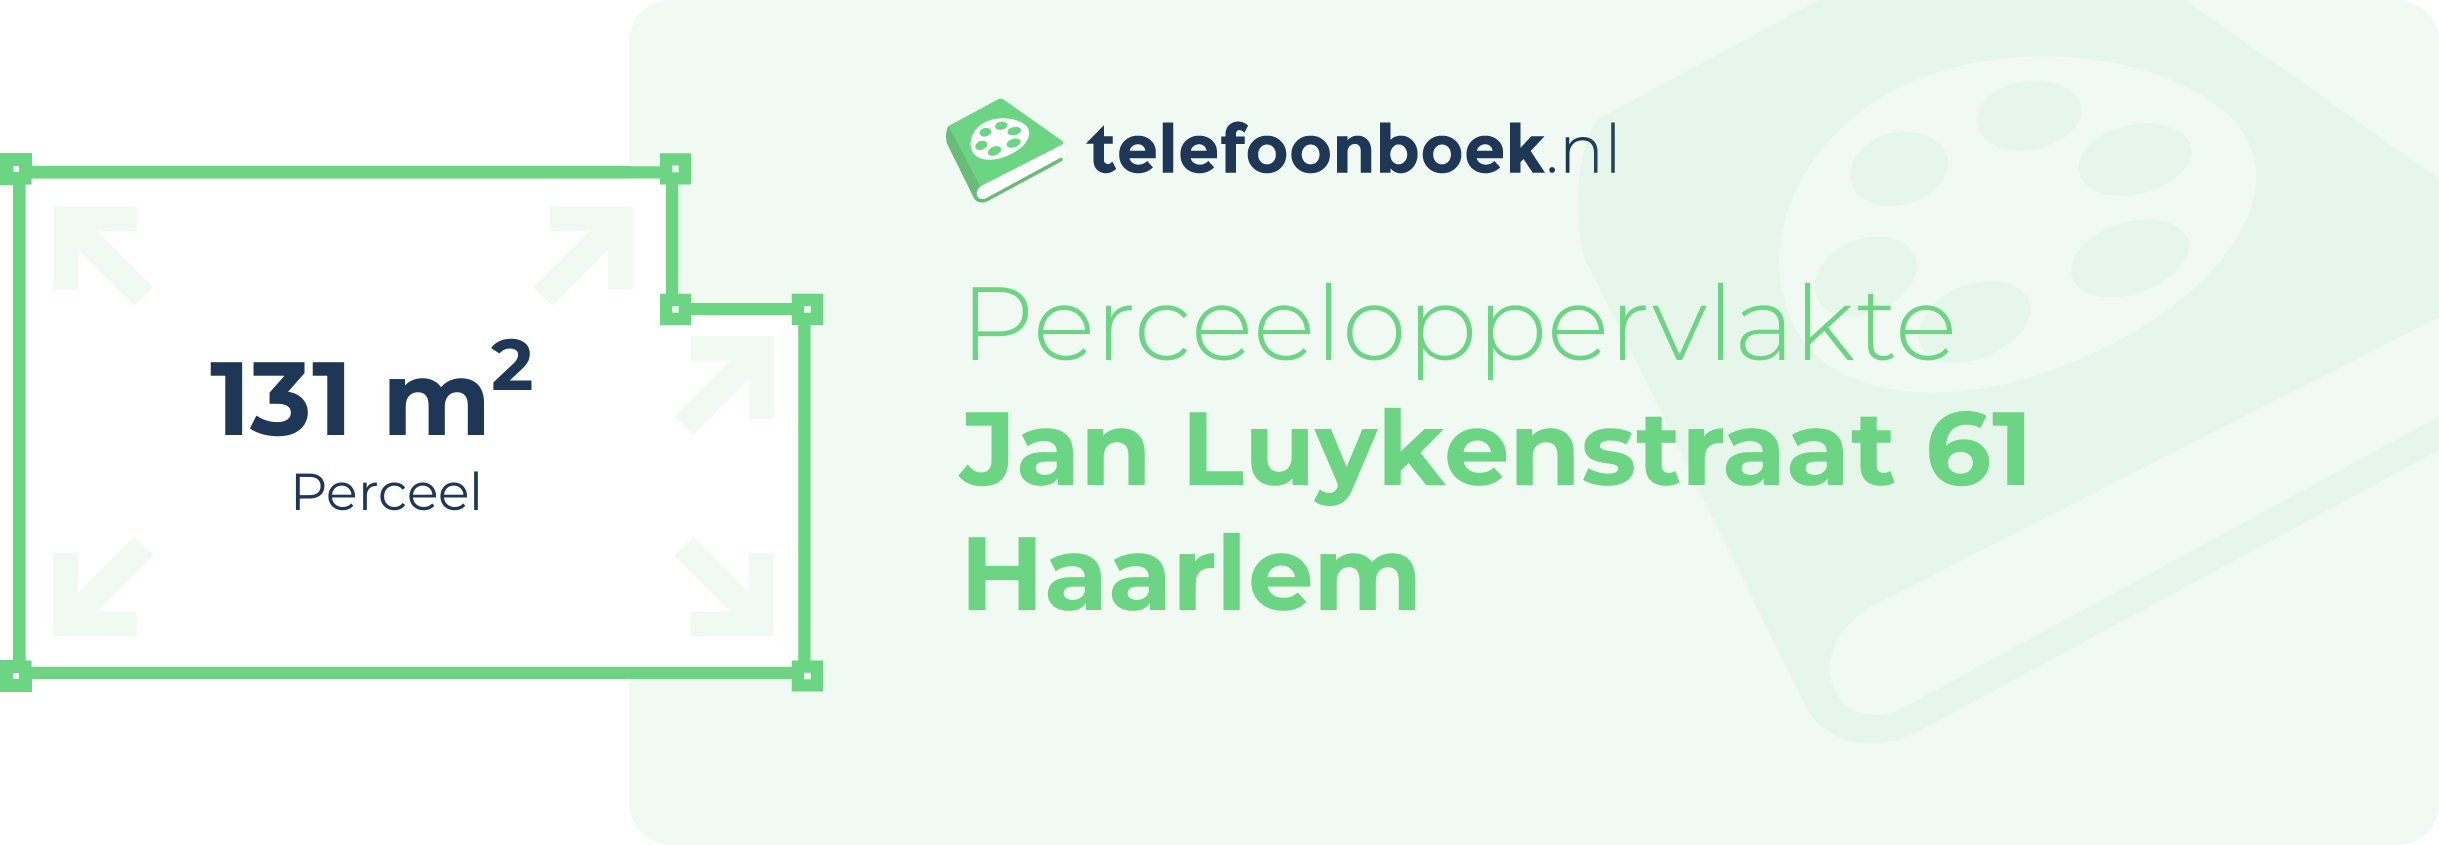 Perceeloppervlakte Jan Luykenstraat 61 Haarlem